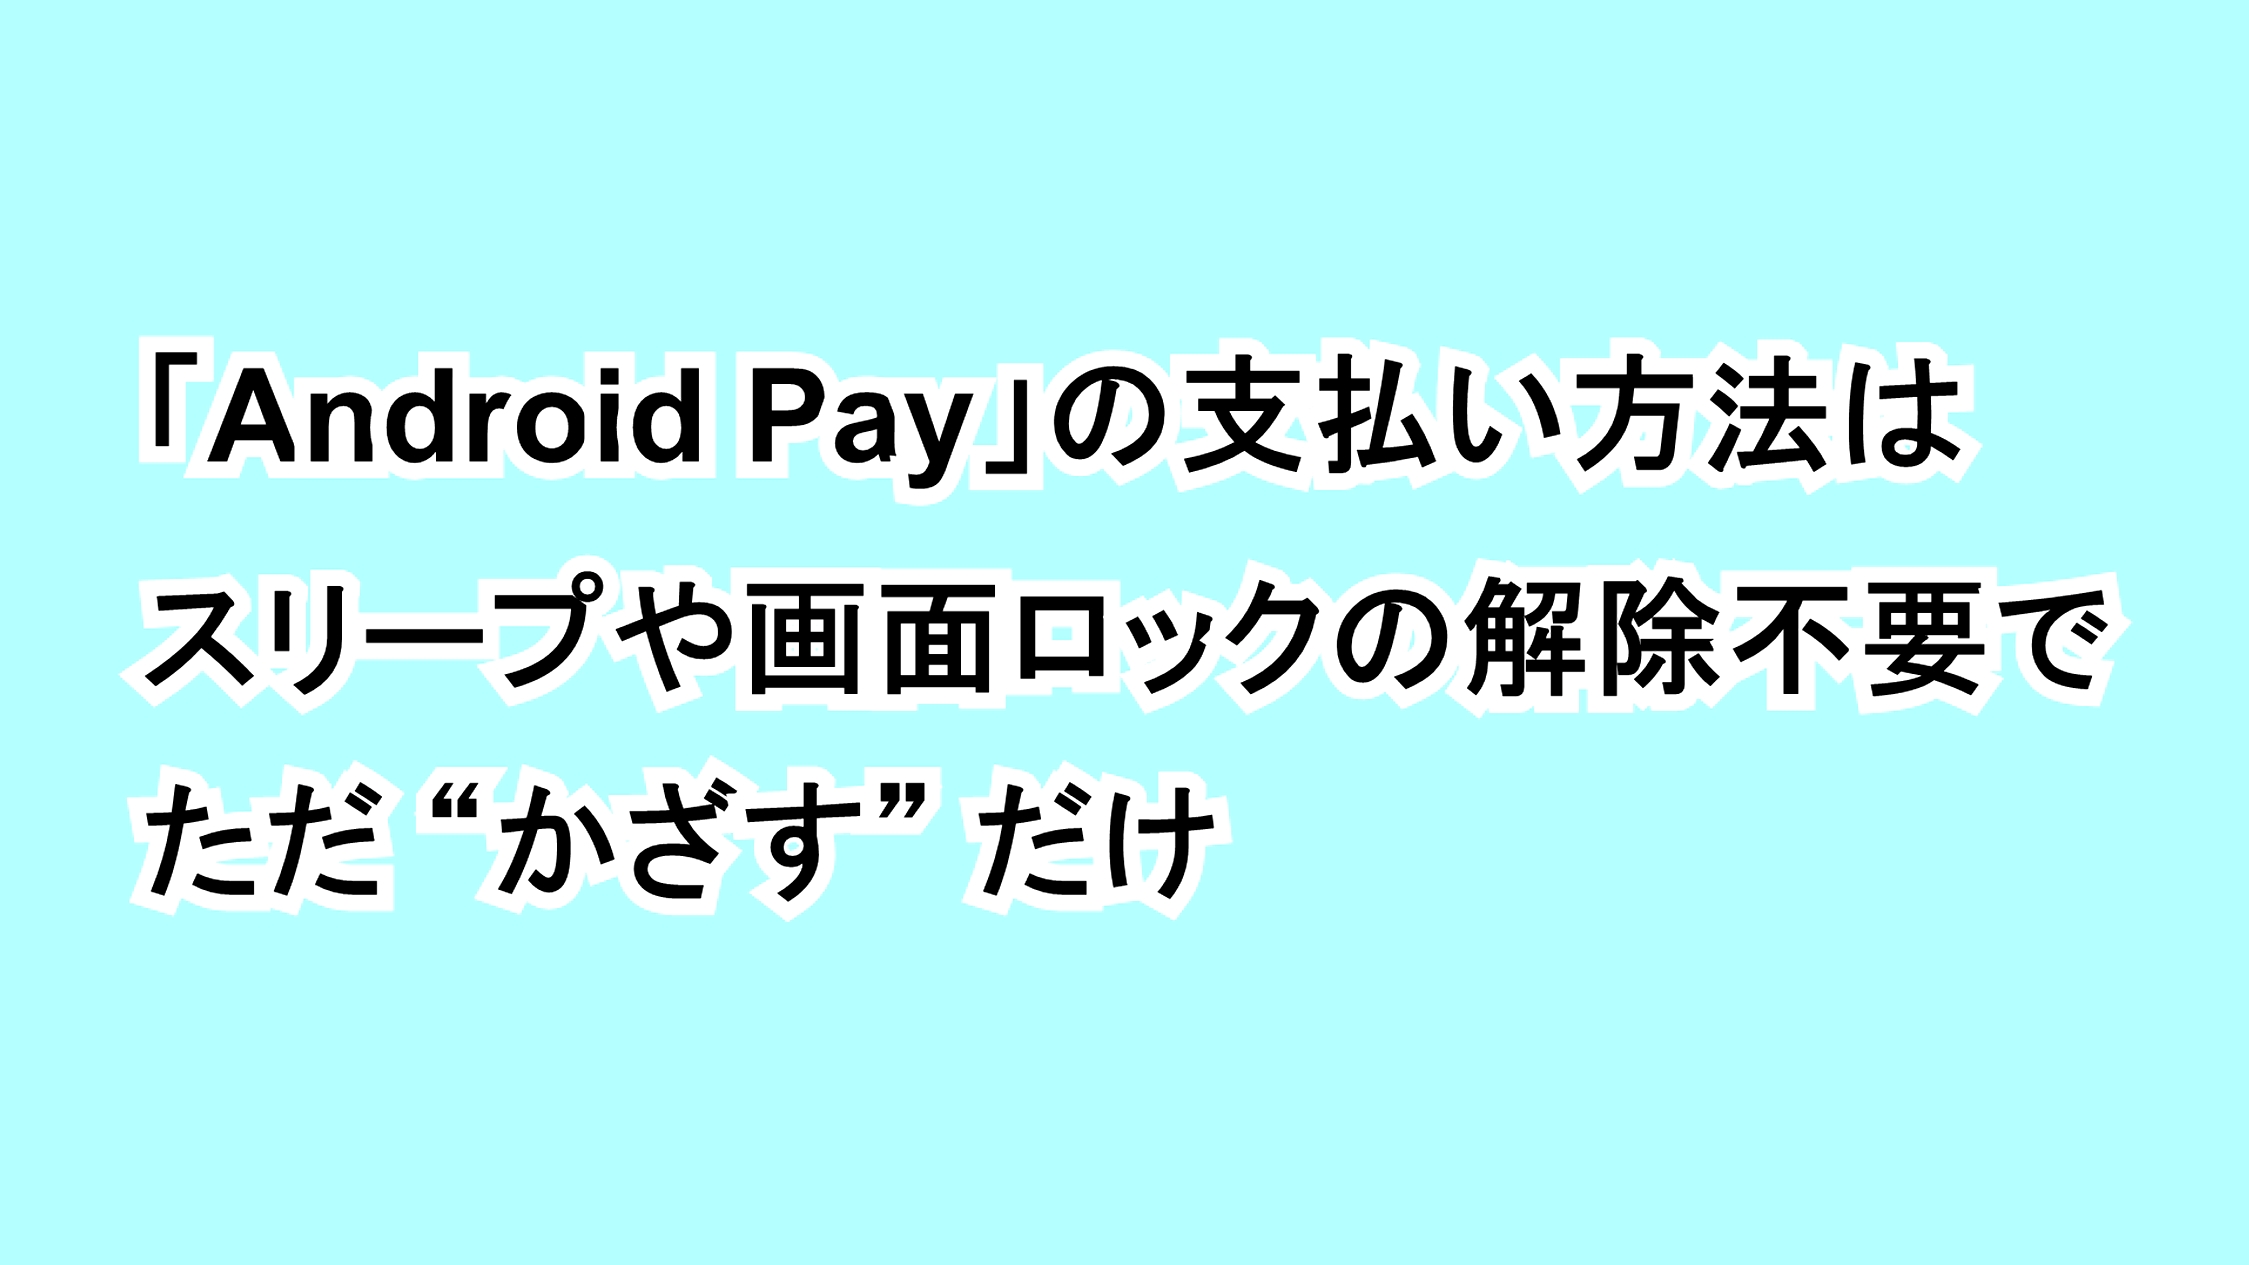 「Android Pay」の支払い方法はスリープや画面ロックの解除不要でただ“かざす”だけ